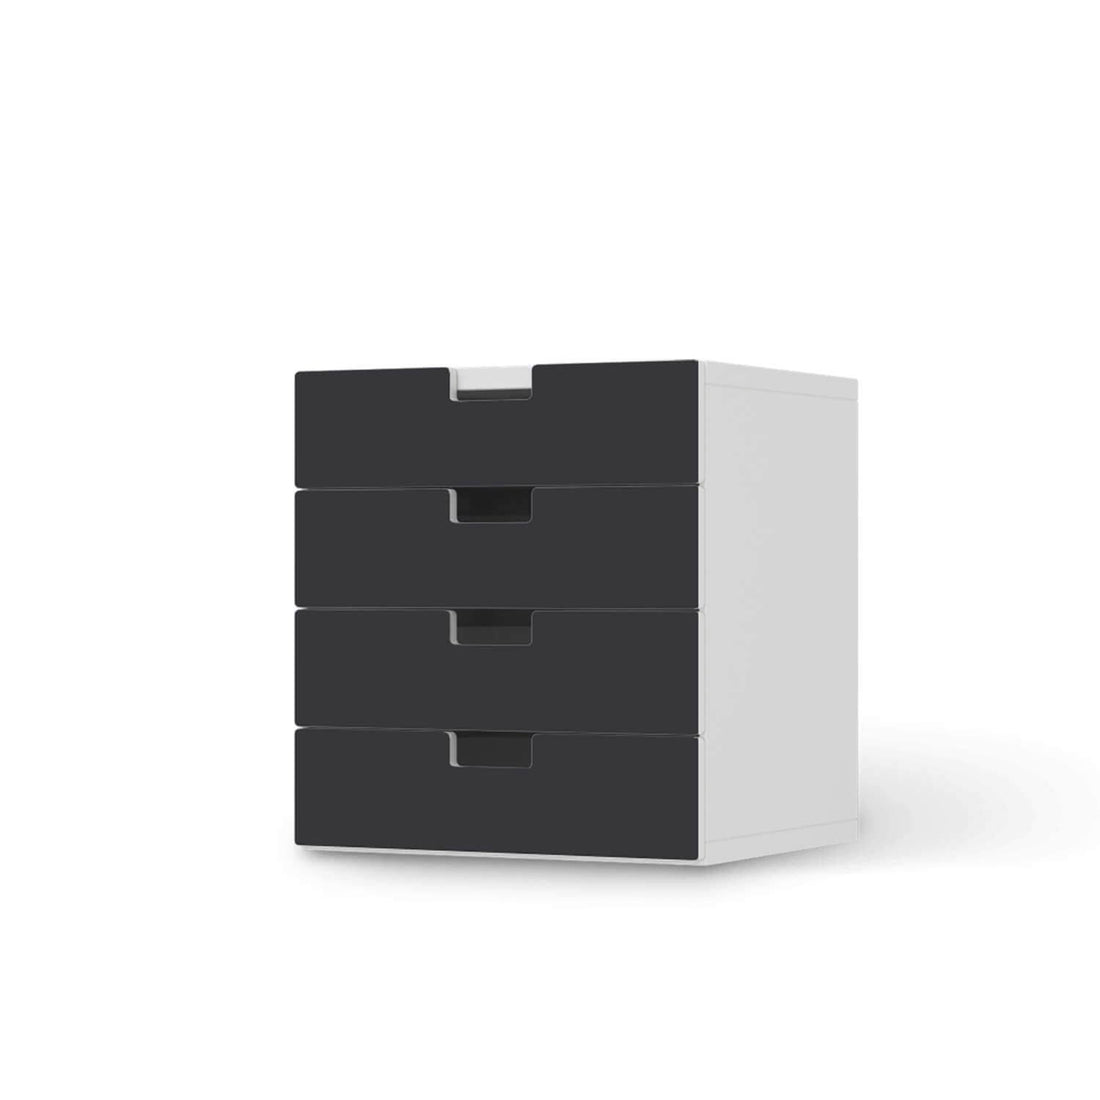 Klebefolie Grau Dark - IKEA Stuva Kommode - 4 Schubladen  - weiss